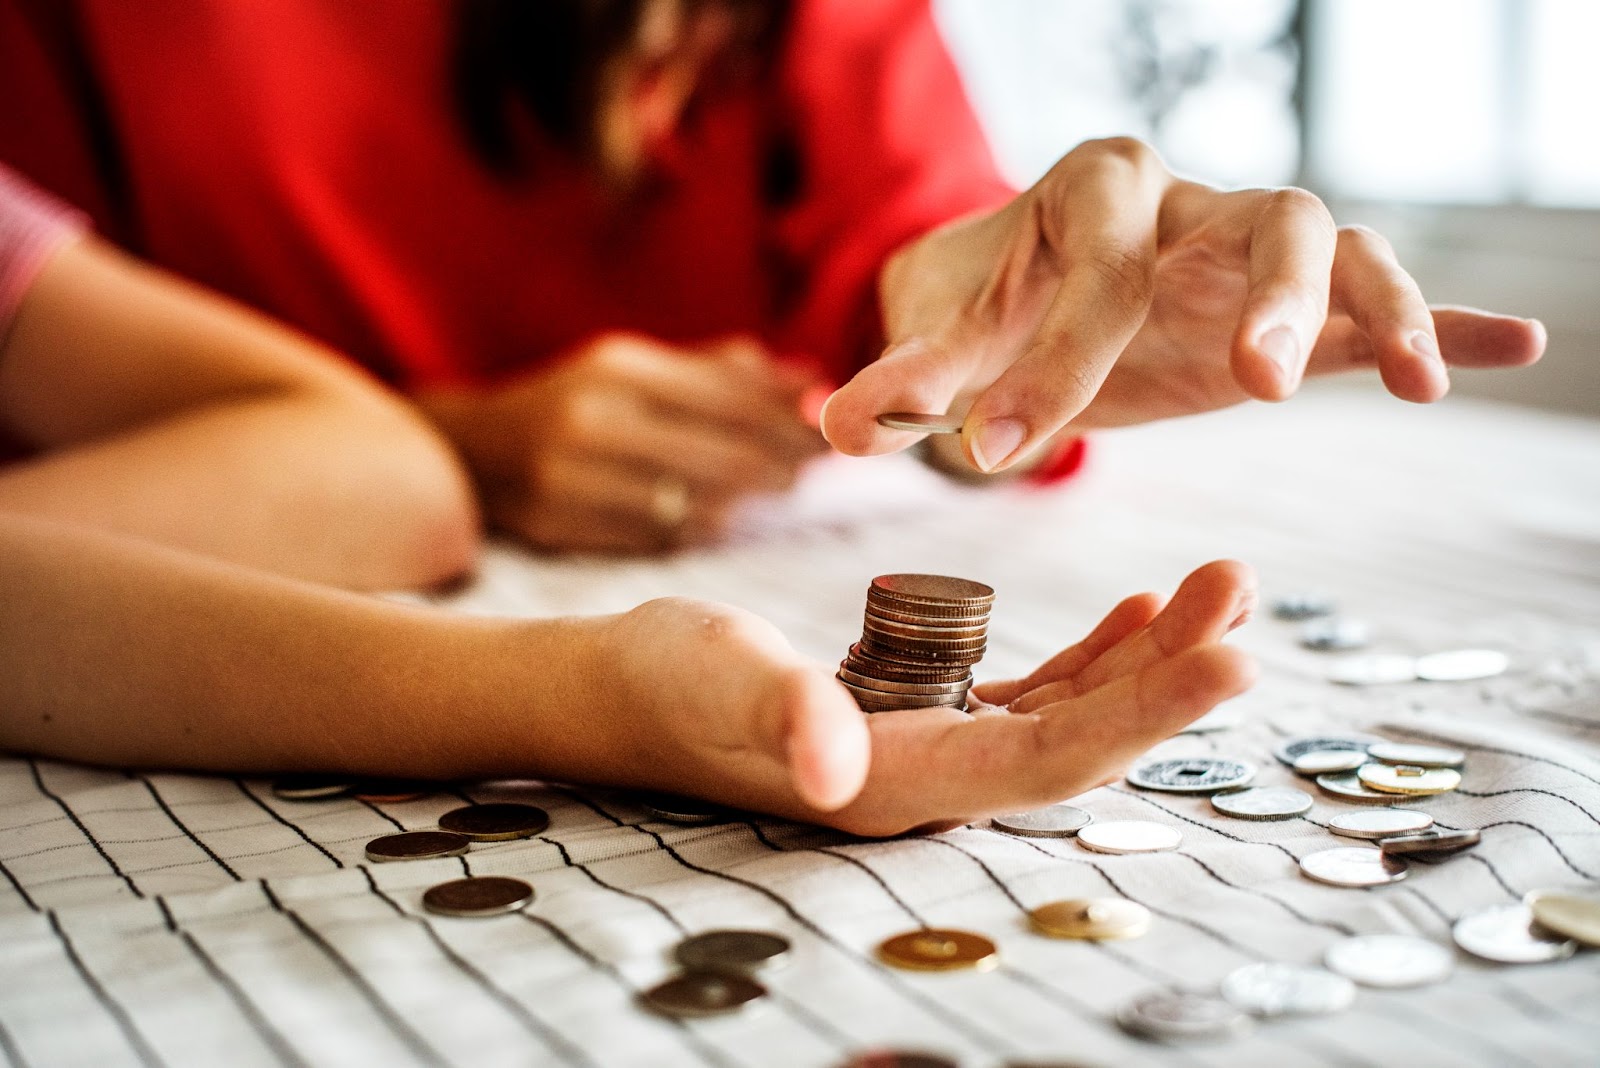 Imagem de uma pilha de moedas sendo colocadas na palma da mão de alguém. Ao redor das mãos, há diversas moedas espalhadas.